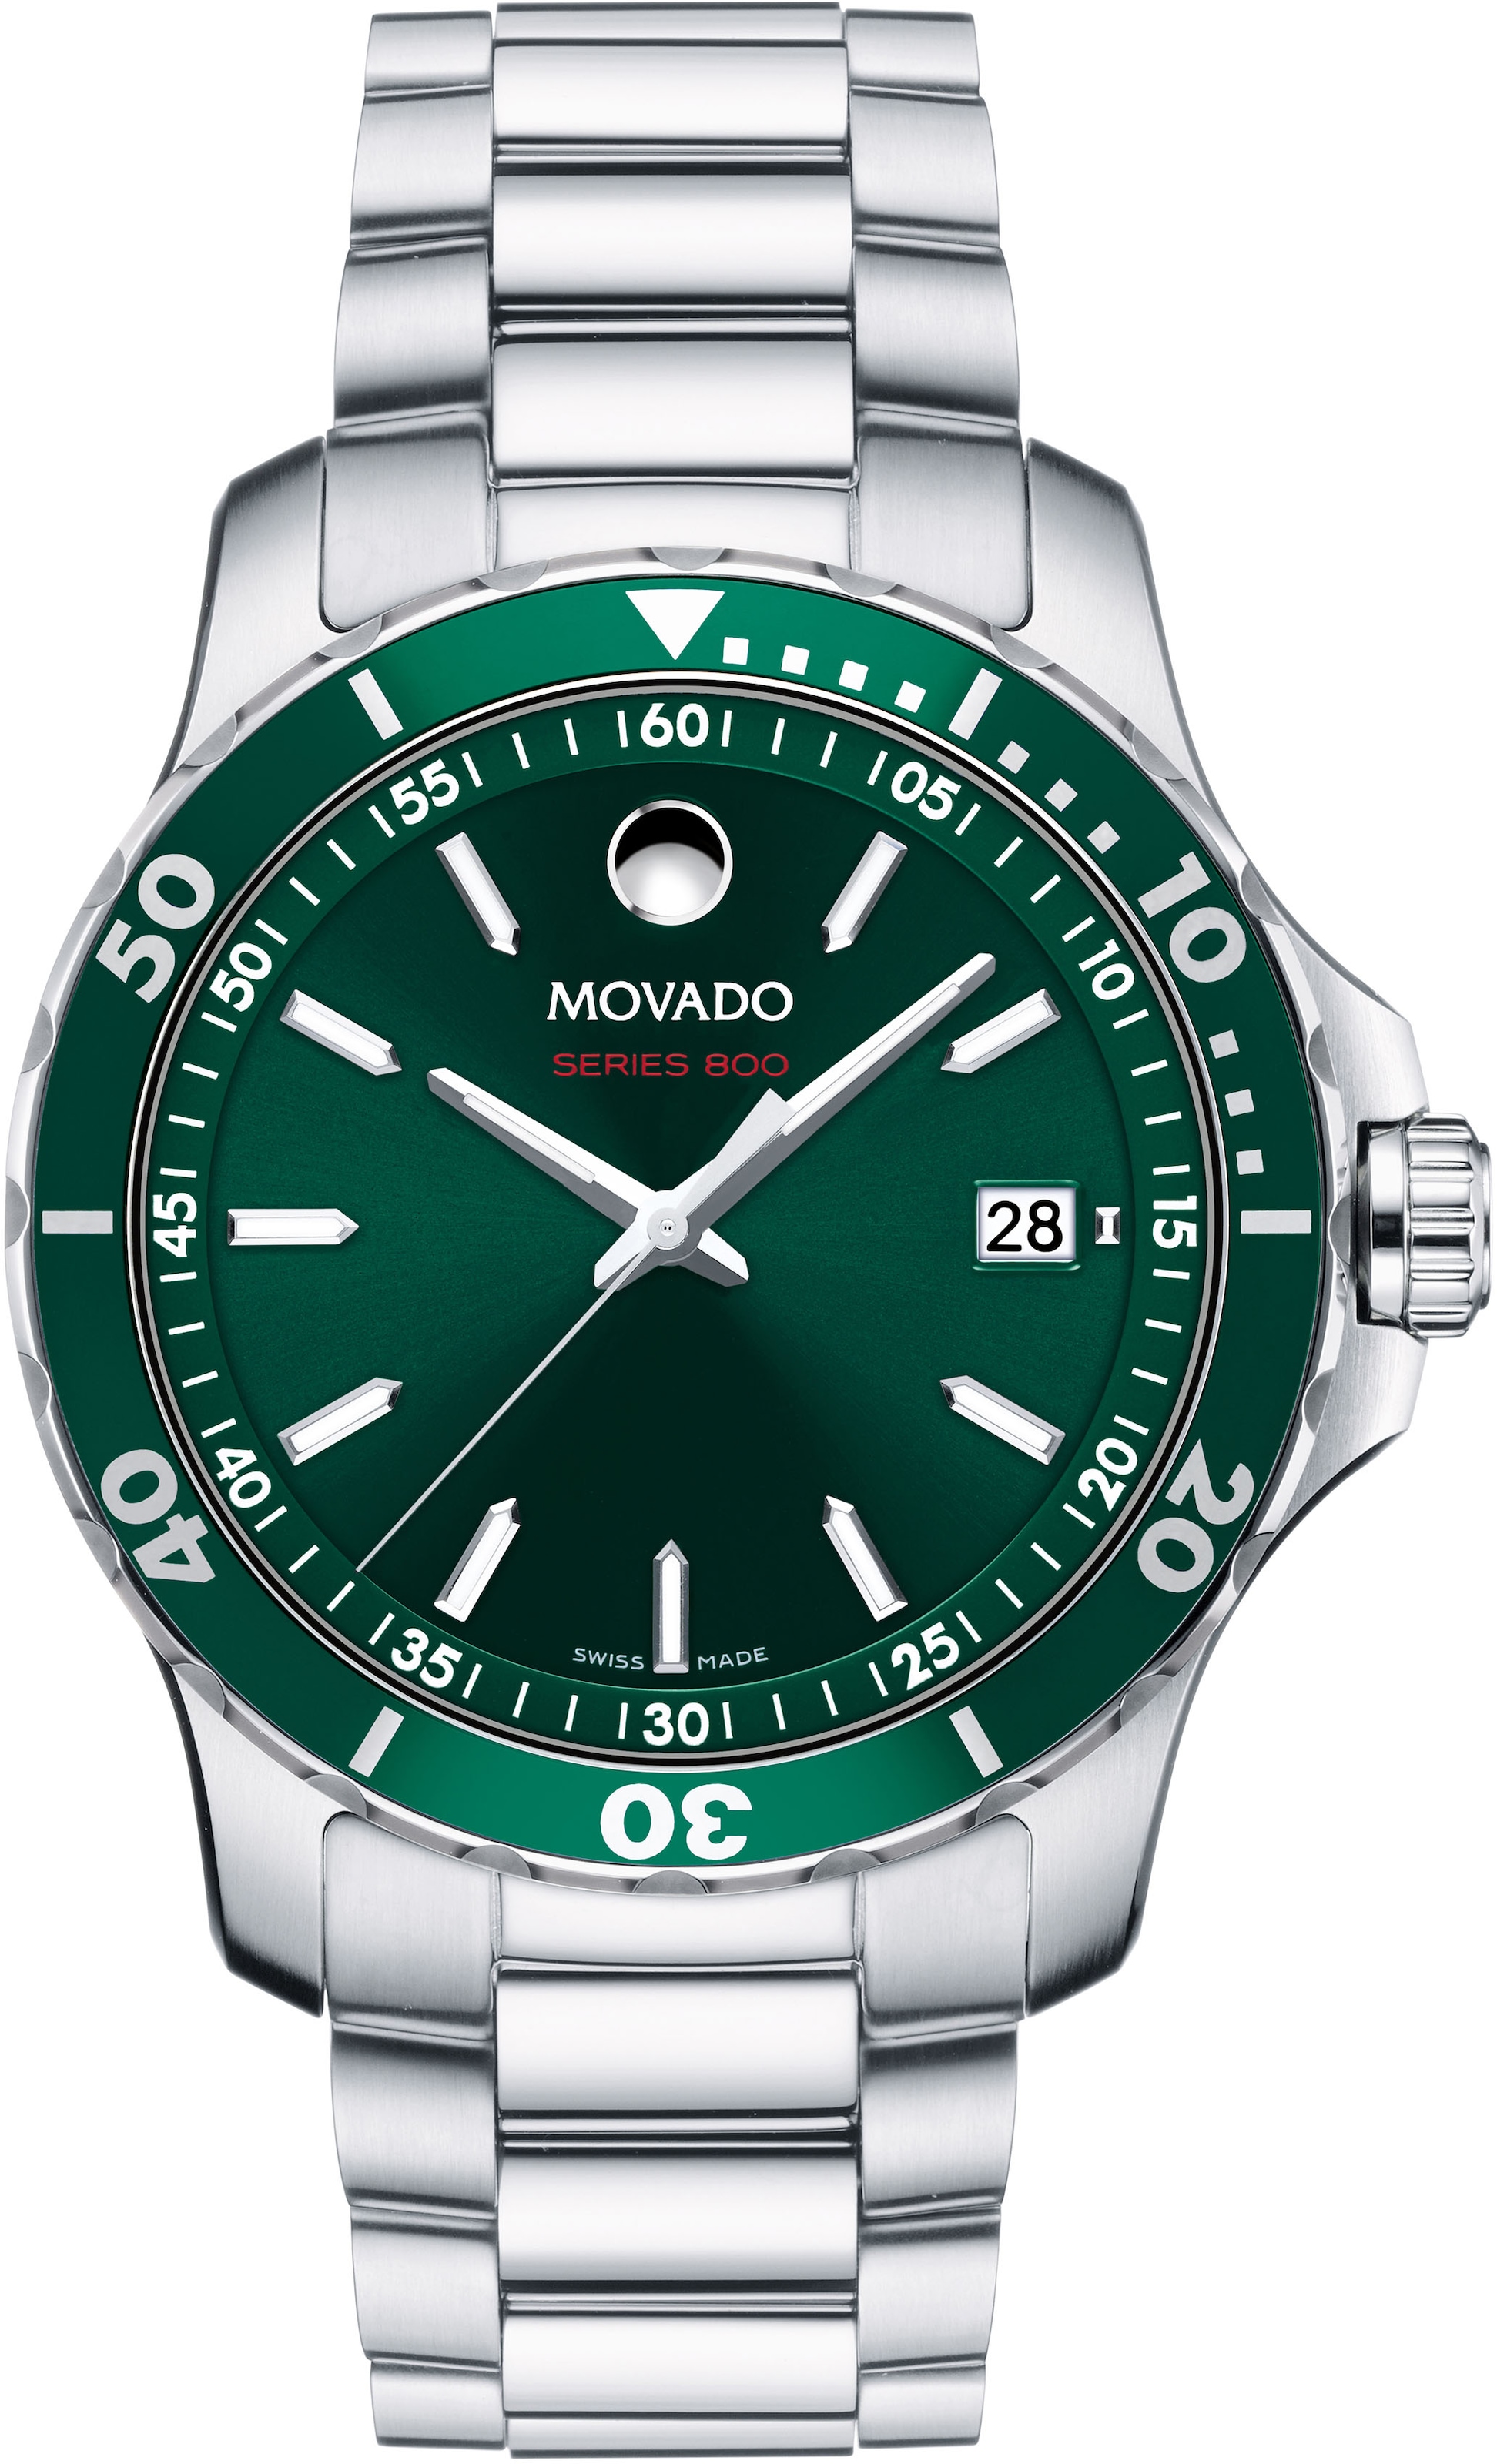 MOVADO Schweizer Uhr »Series 800, Rechnung auf 2600136« kaufen